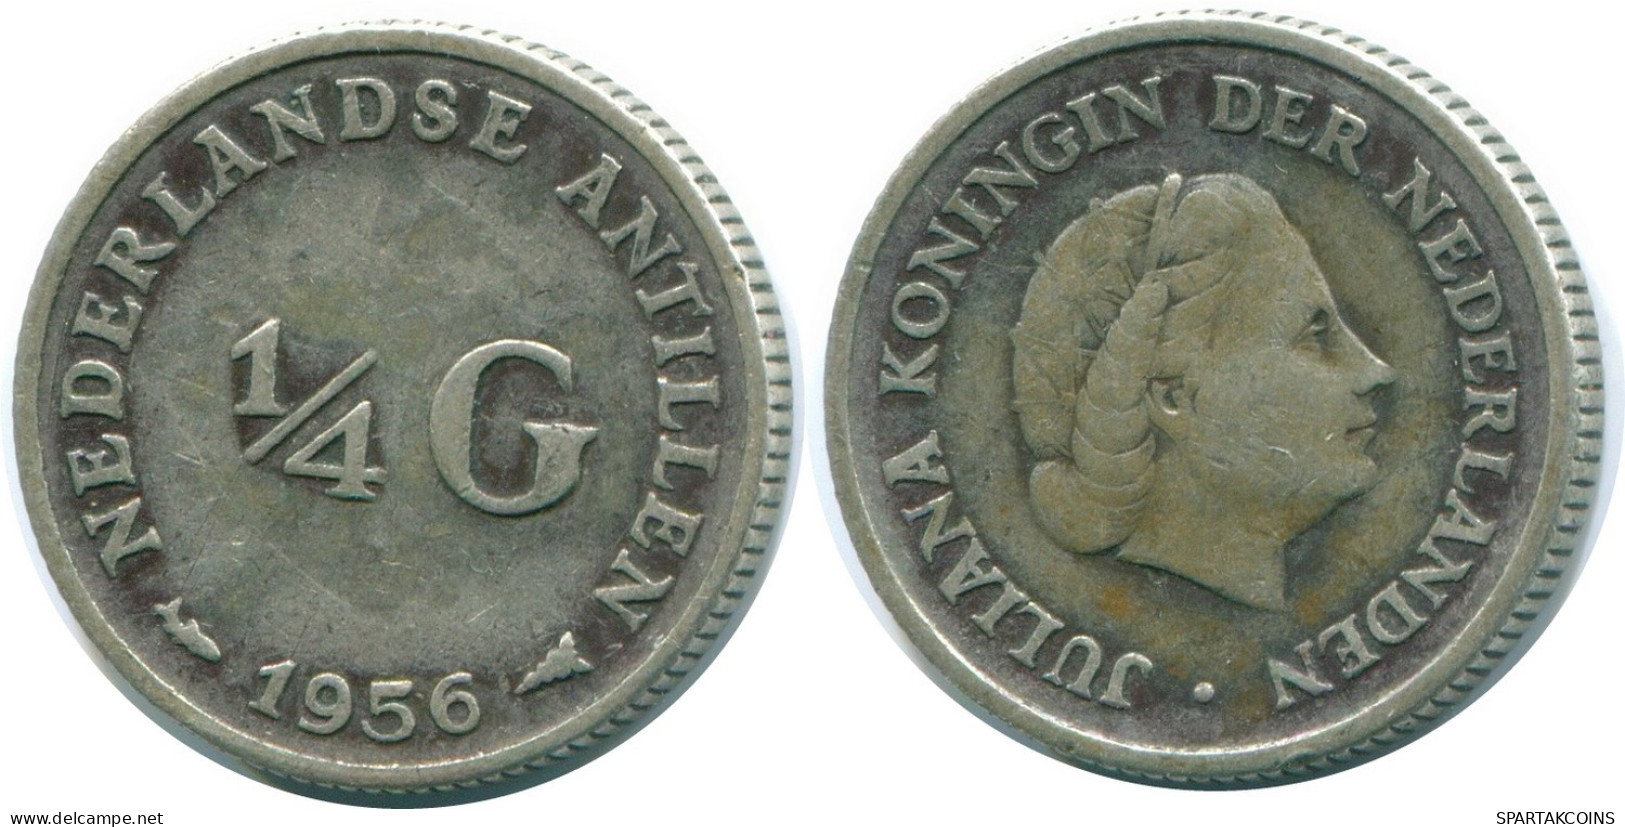 1/4 GULDEN 1956 NIEDERLÄNDISCHE ANTILLEN SILBER Koloniale Münze #NL10940.4.D.A - Niederländische Antillen